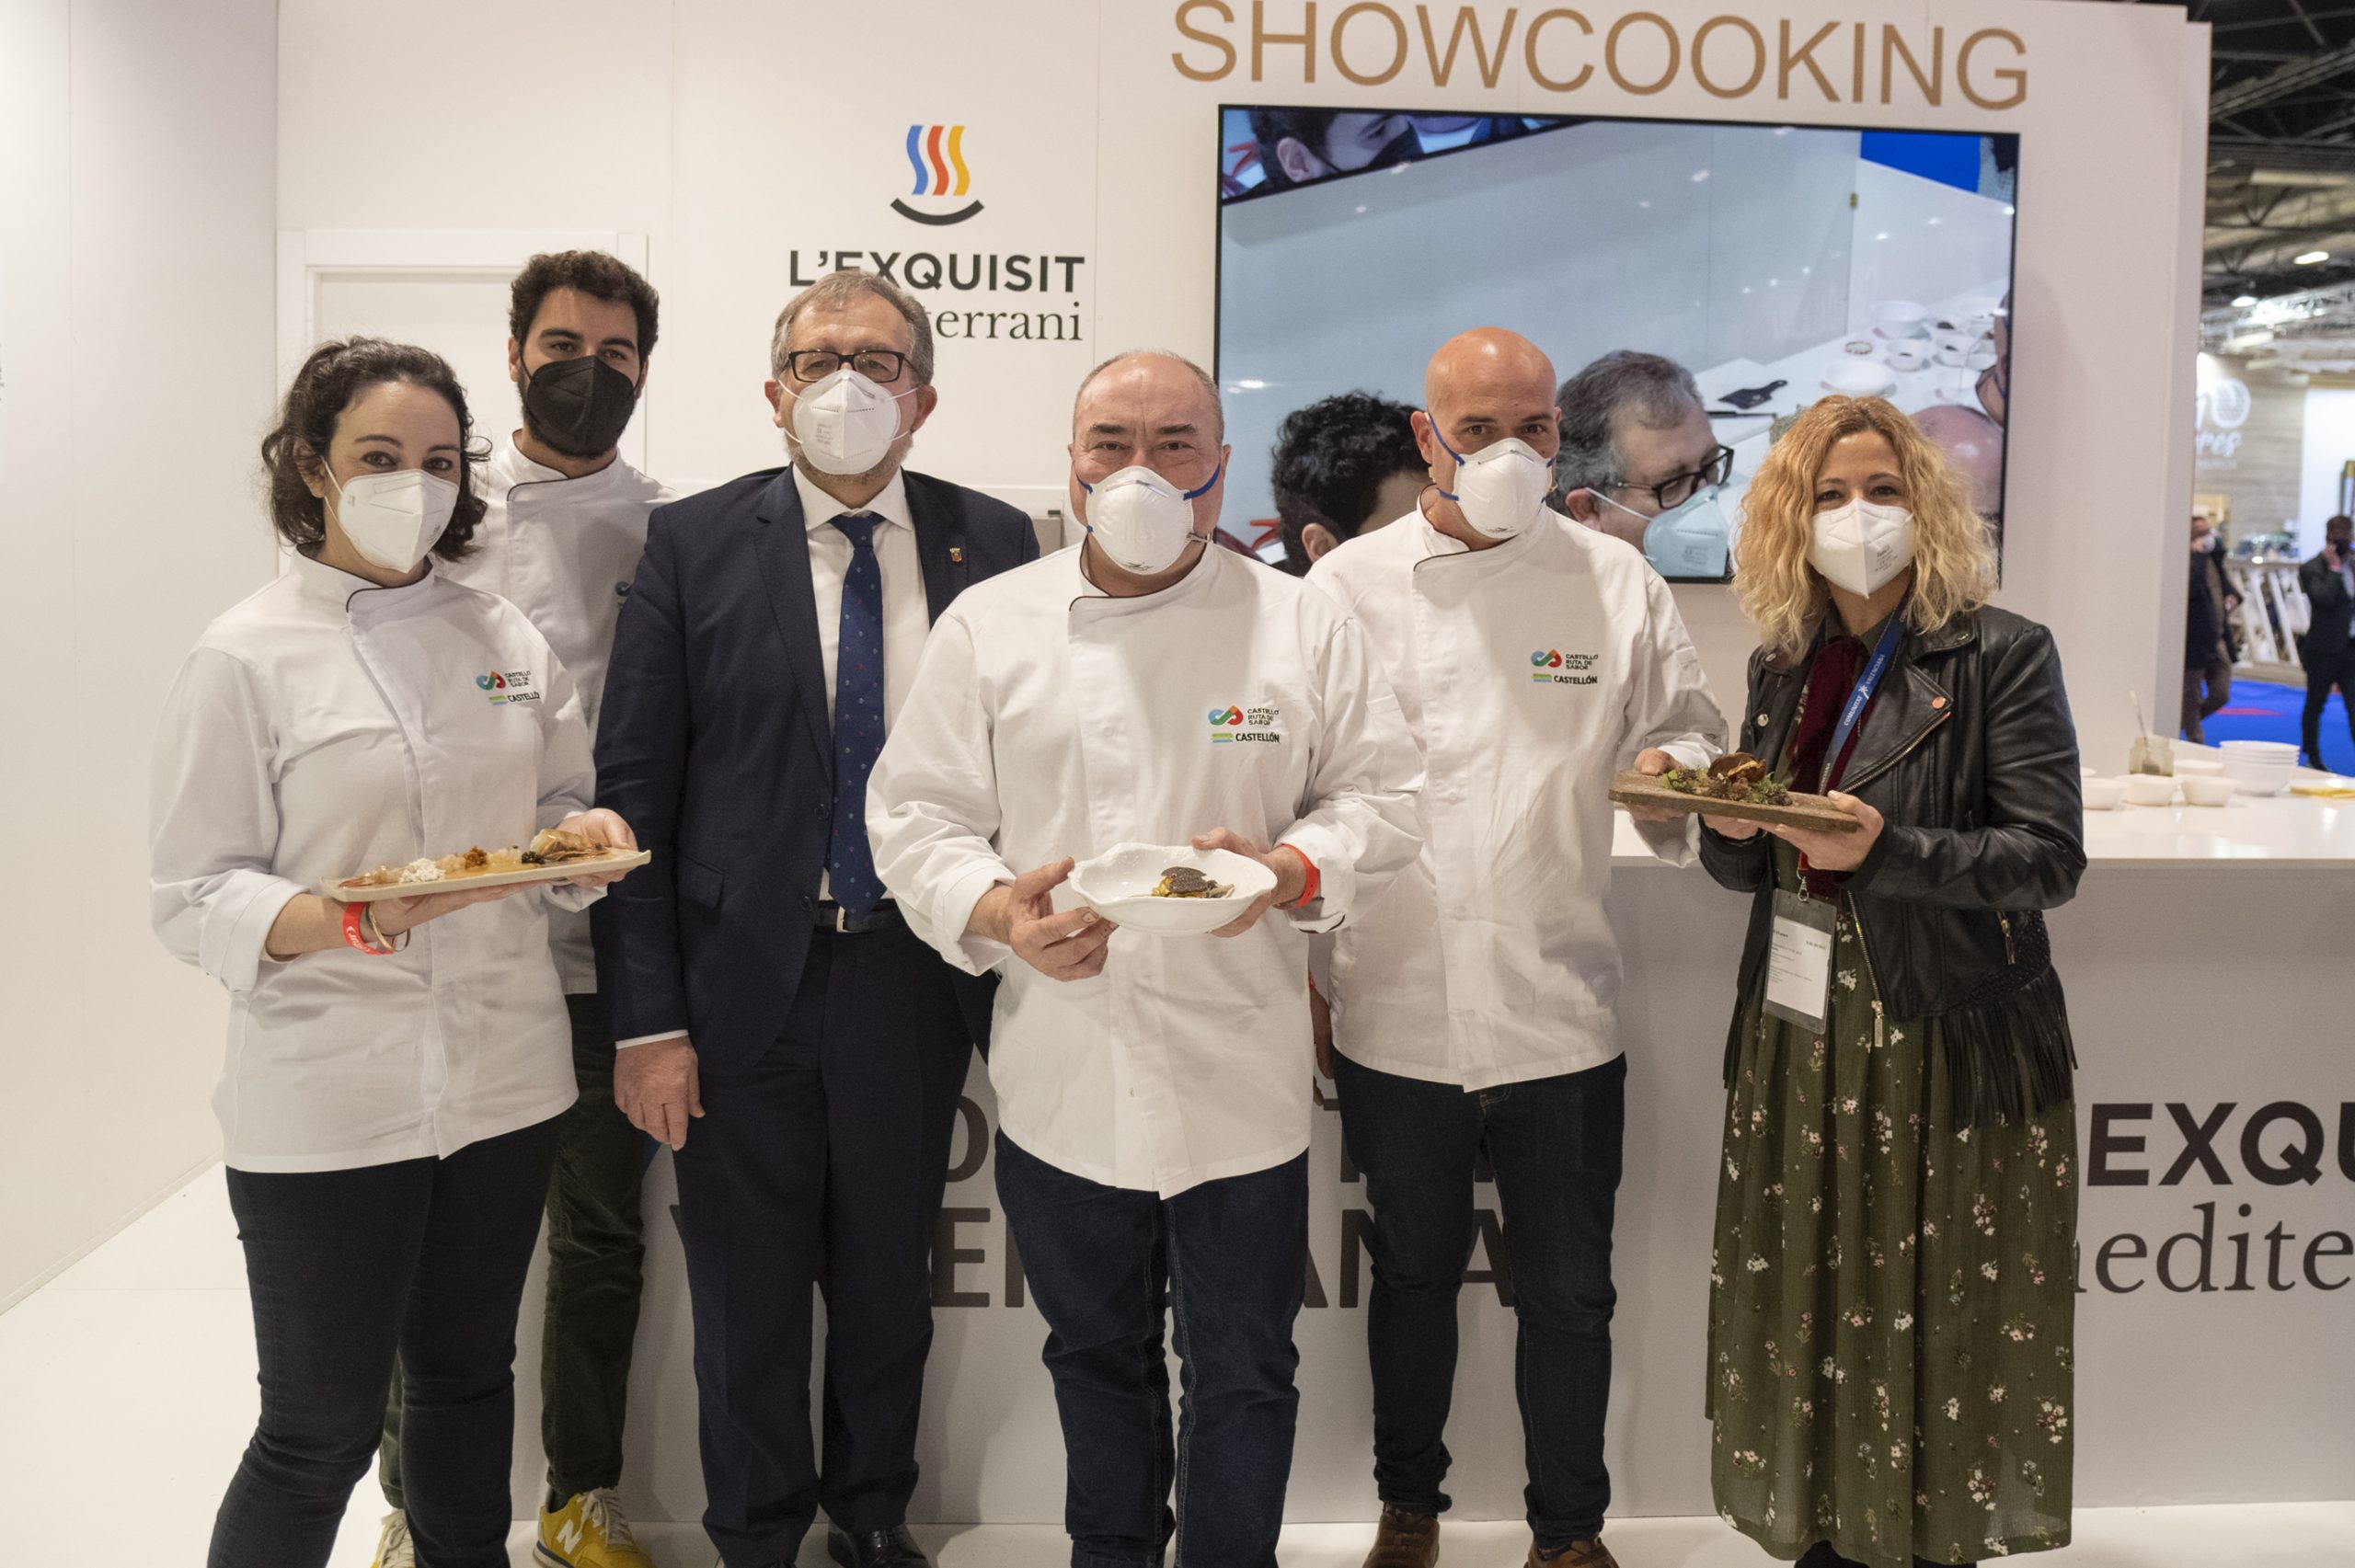 Los chefs con estrella Michelin de Castellón muestran en Fitur una provincia para probarla